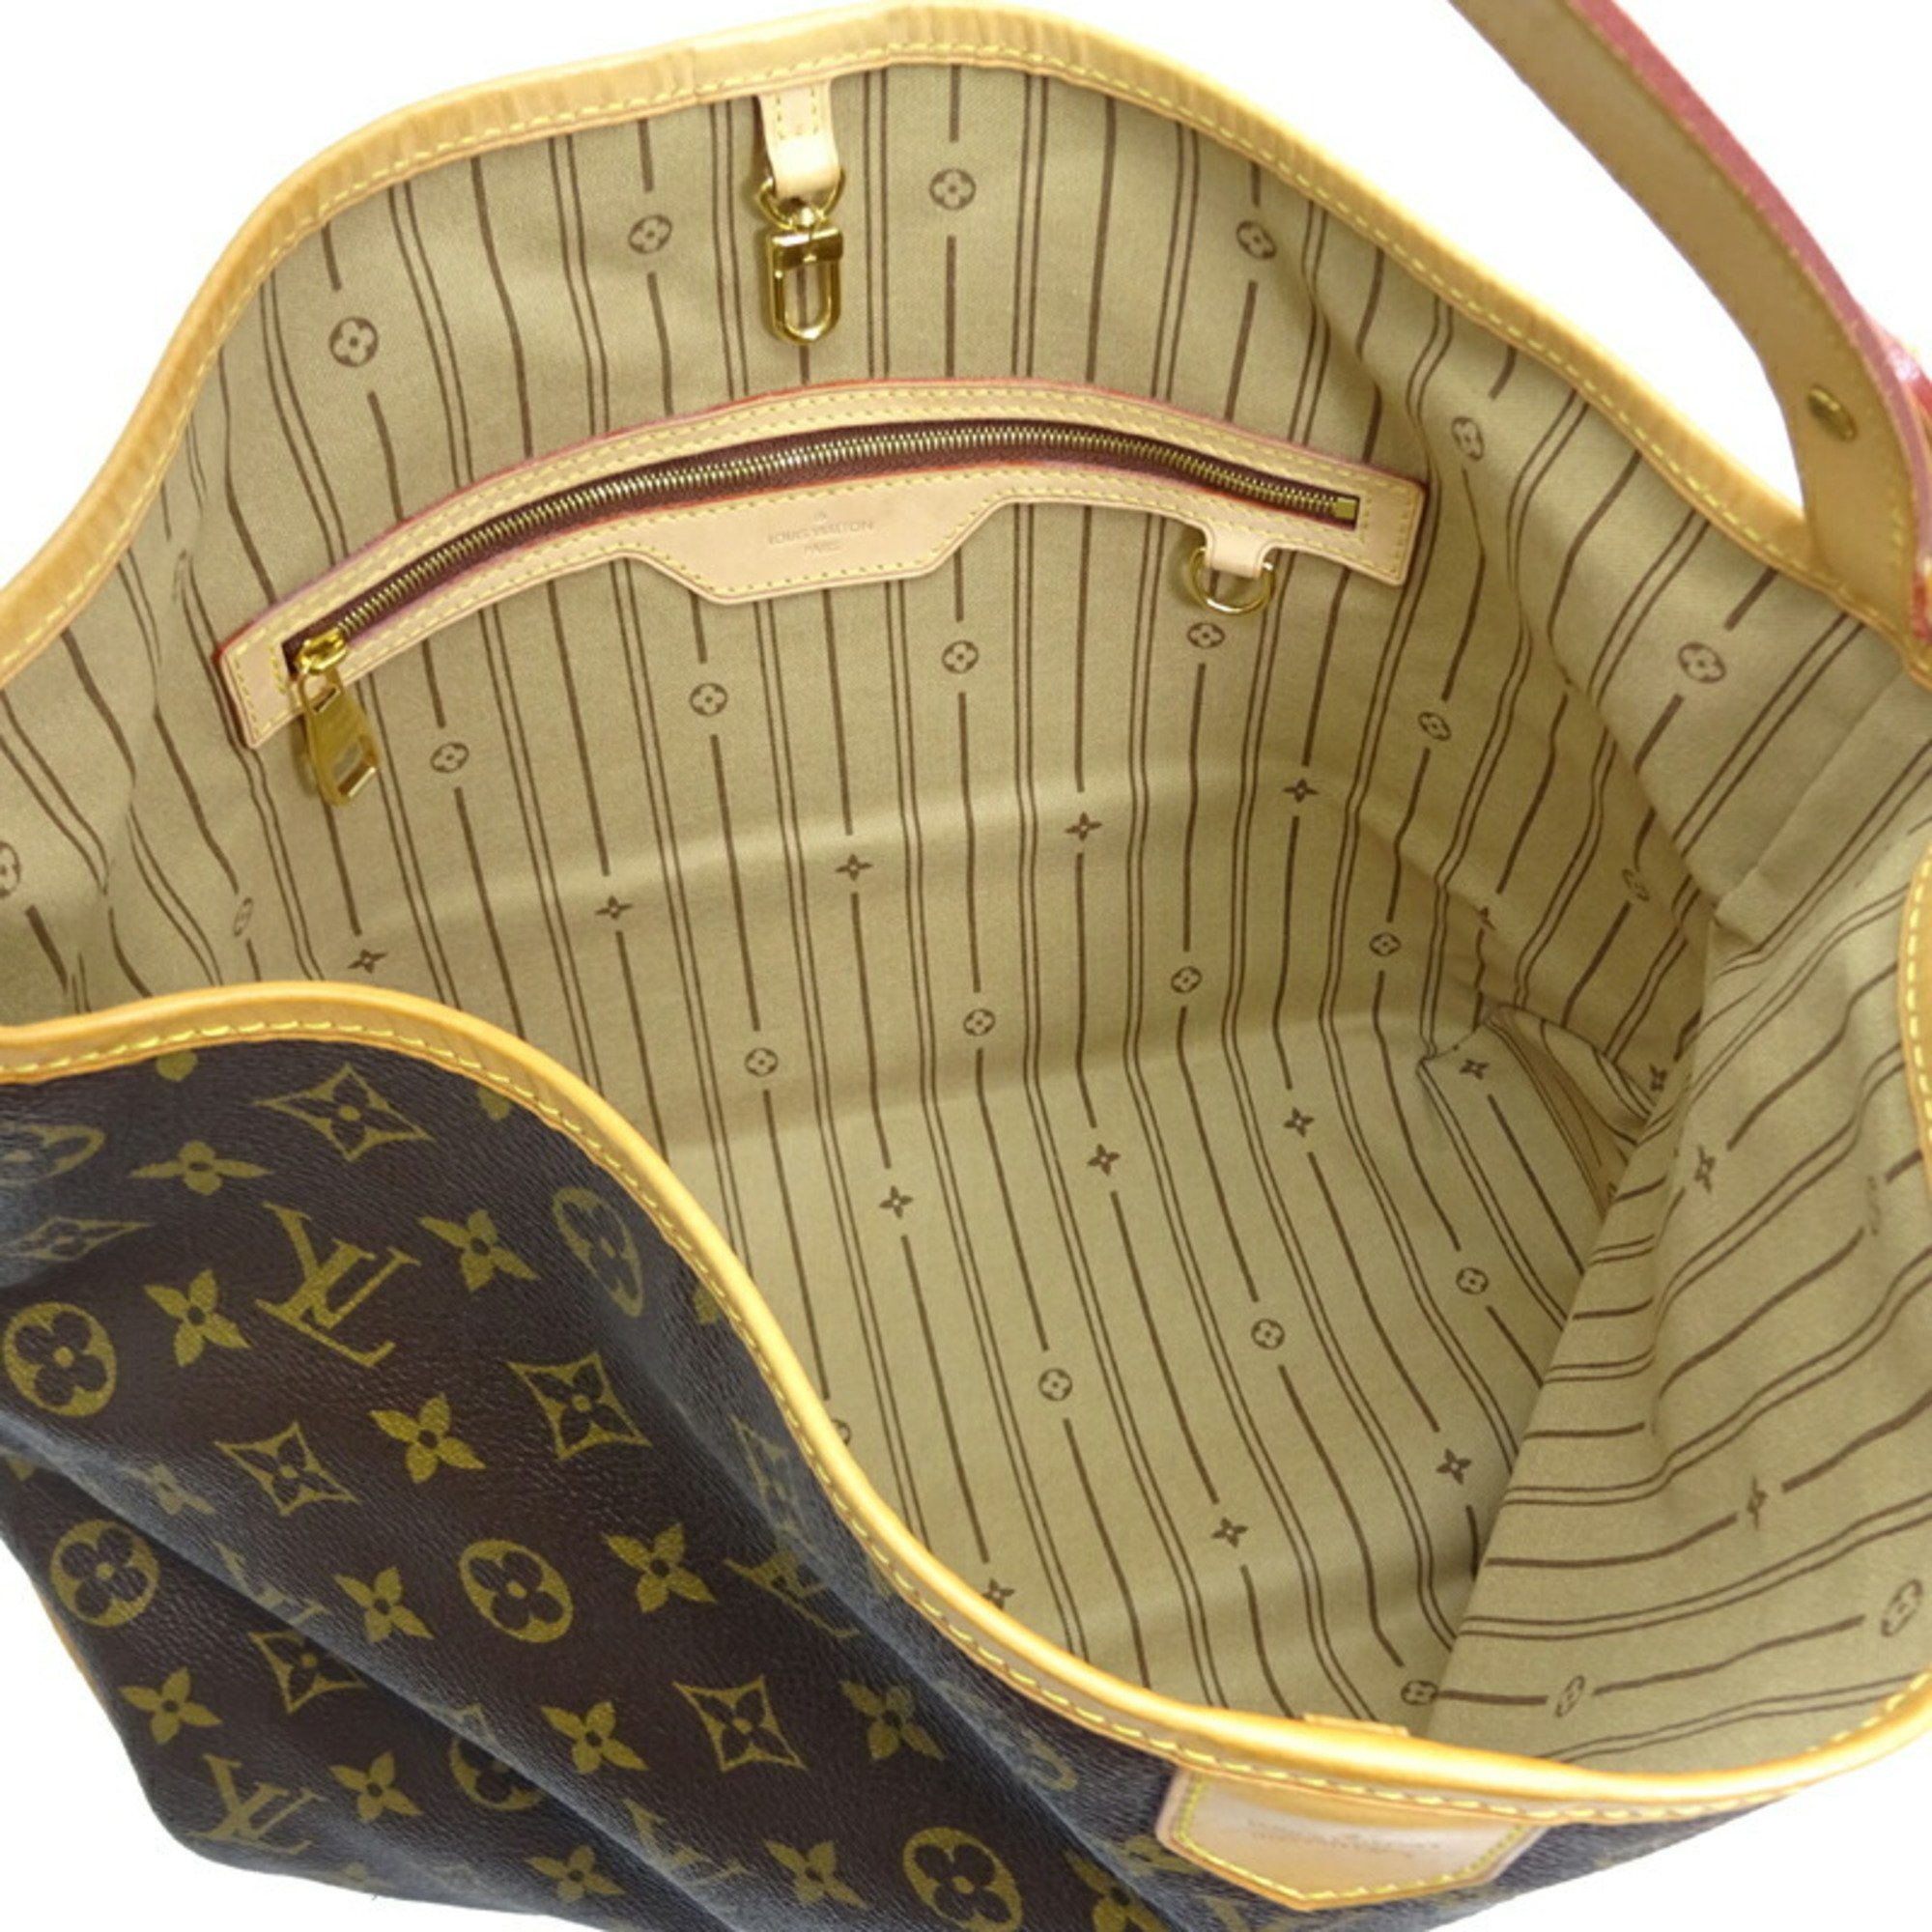 Louis Vuitton Delightful PM Women's Shoulder Bag M40352 Monogram Brown